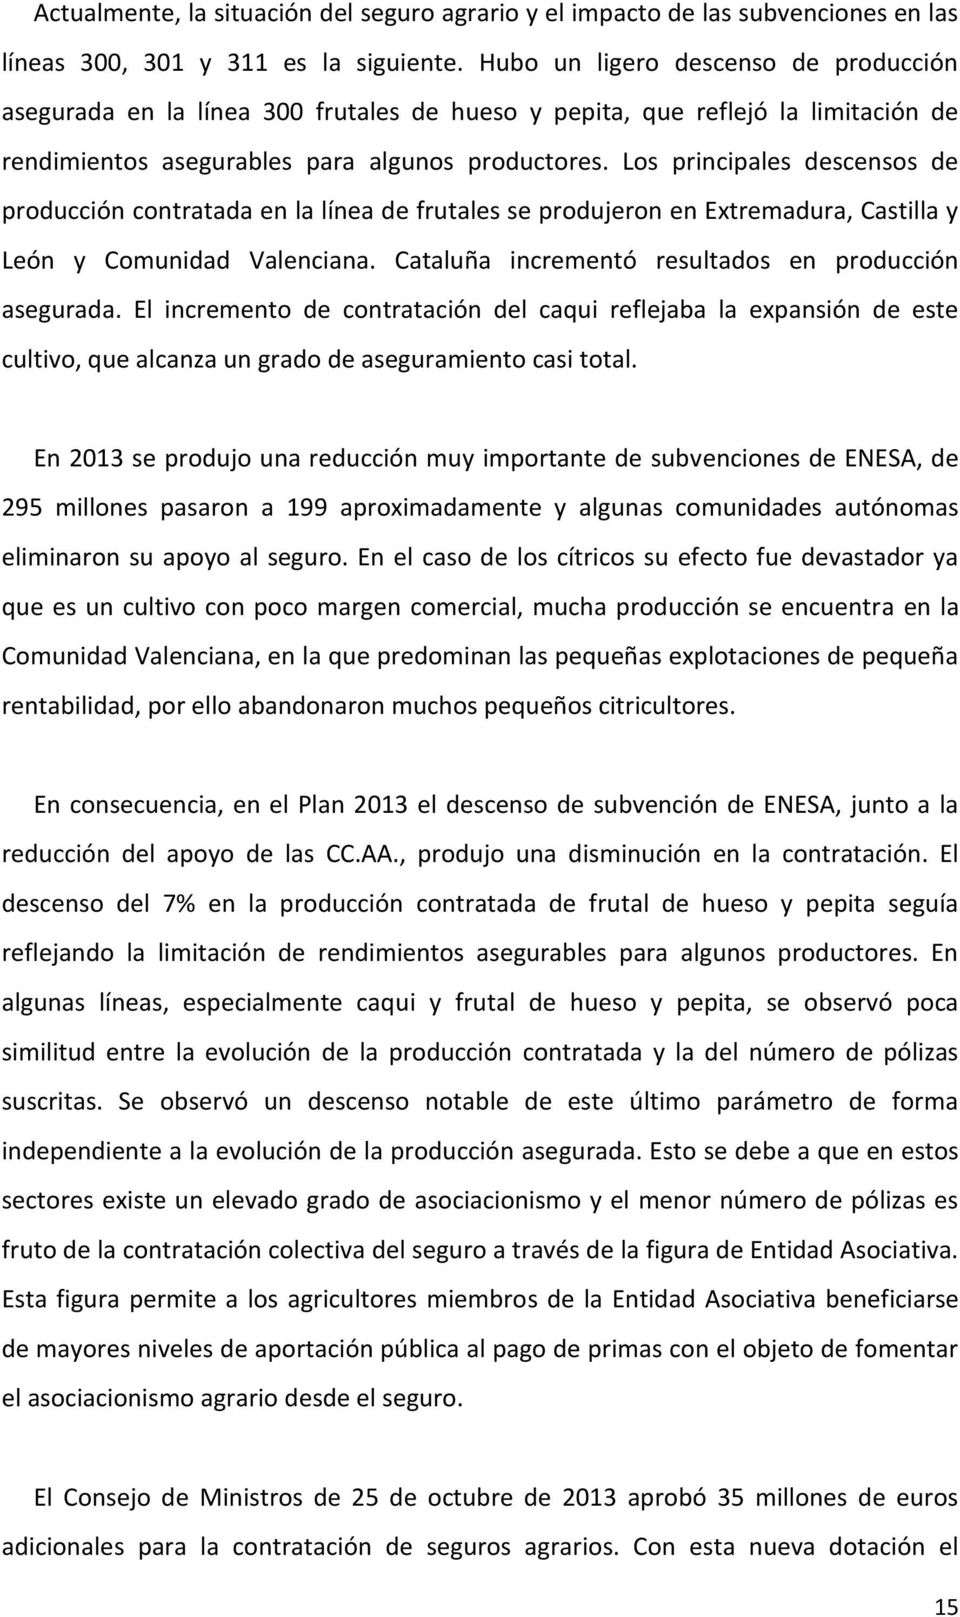 Los principales descensos de producción contratada en la línea de frutales se produjeron en Extremadura, Castilla y León y Comunidad Valenciana. Cataluña incrementó resultados en producción asegurada.